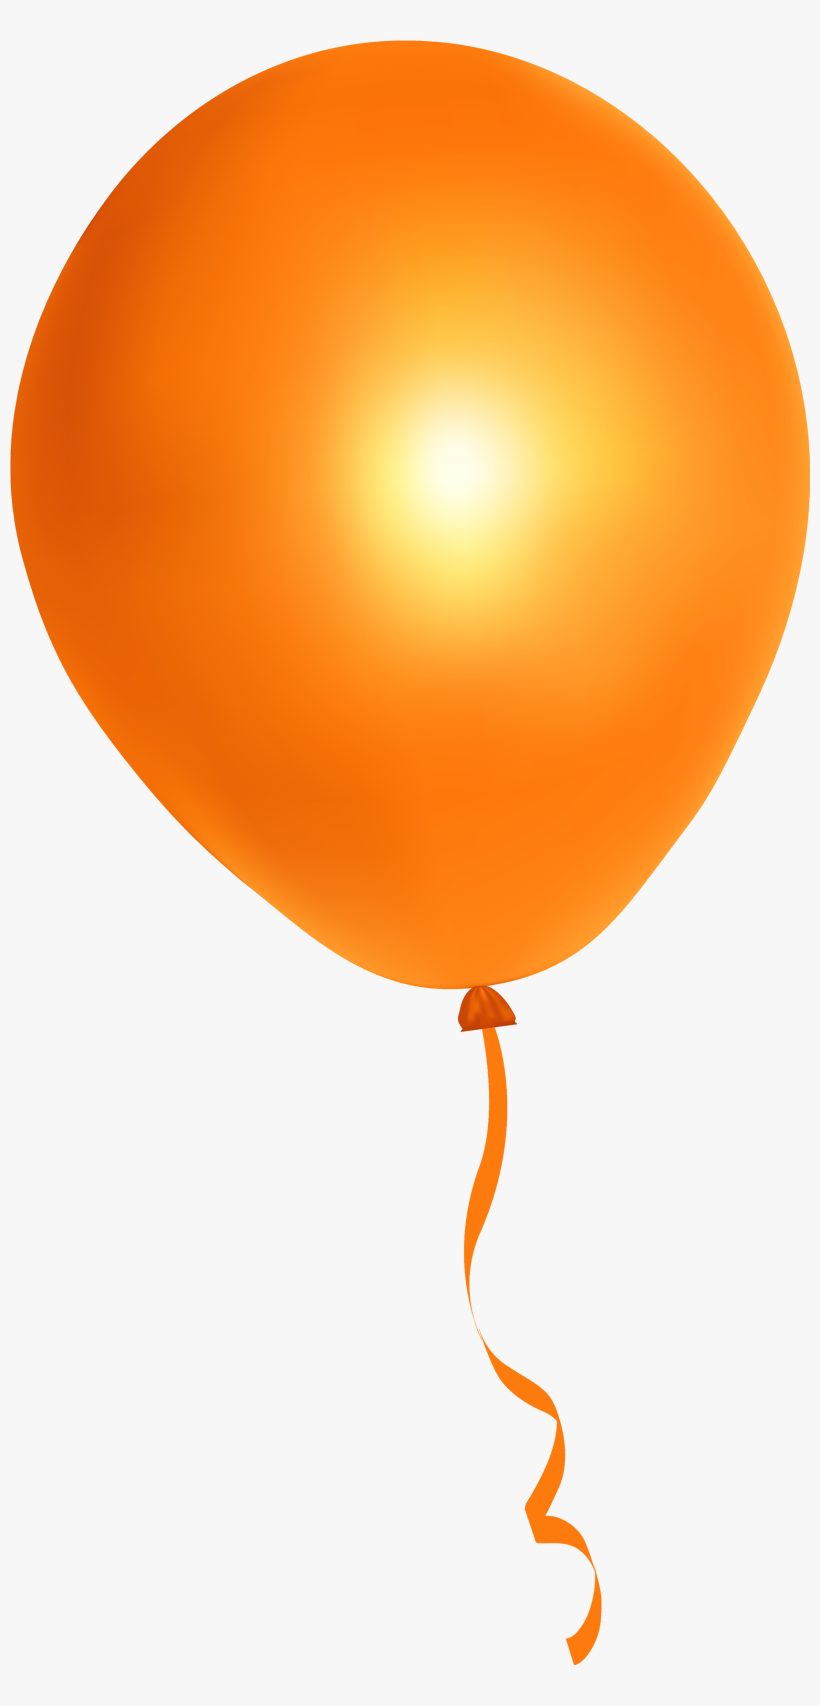 Orange Balloon Png Image - Orange Balloon Transparent Background, transparent png #18483